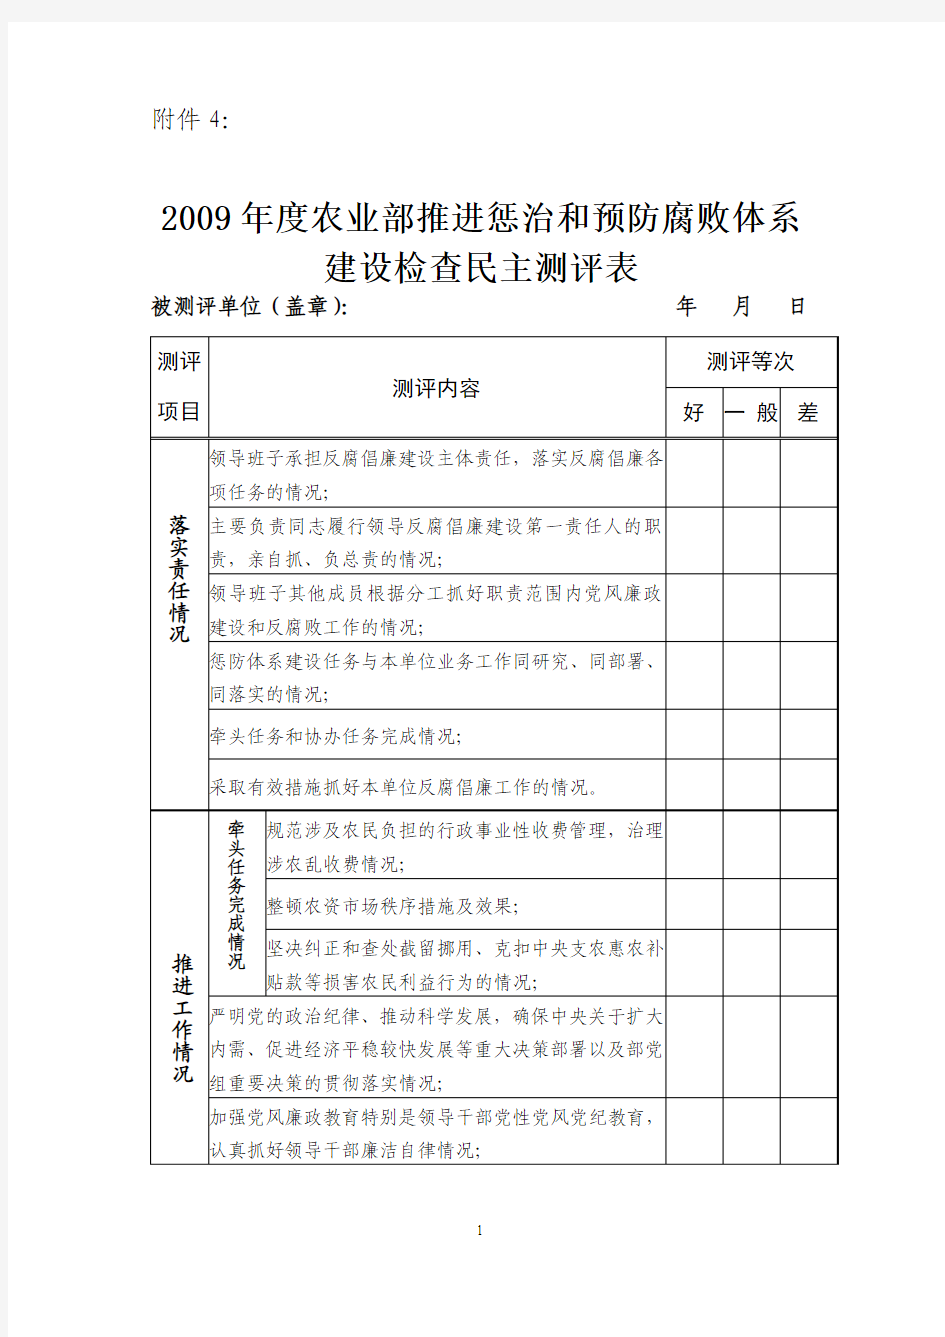 2009年度农业部推进惩治和预防腐败体系建设检查民主测评表